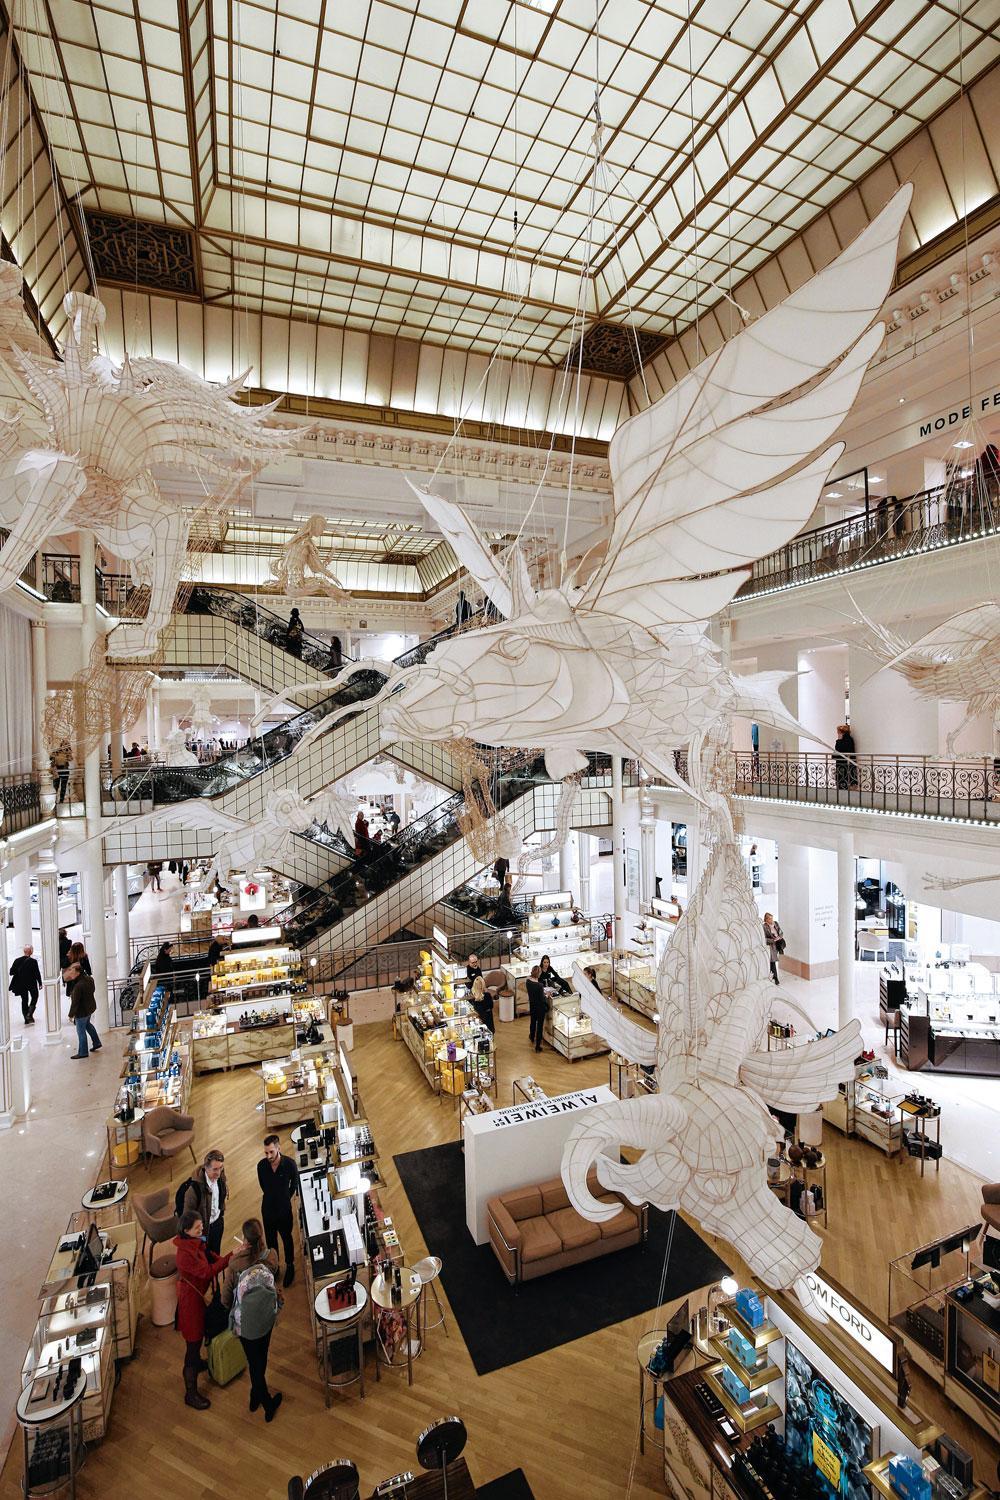 Ook een publiekstrekker: luxewarenhuis Le Bon Marché pakte van 16 januari tot 20 februari 2016 uit met 'Er Xi, Air de Jeux', een tijdelijke tentoonstelling van kunstenaar Ai Weiwei, met als thema de kindertijd, bestaande uit een gigantische constructie van bamboe met draken en kites in 3D.